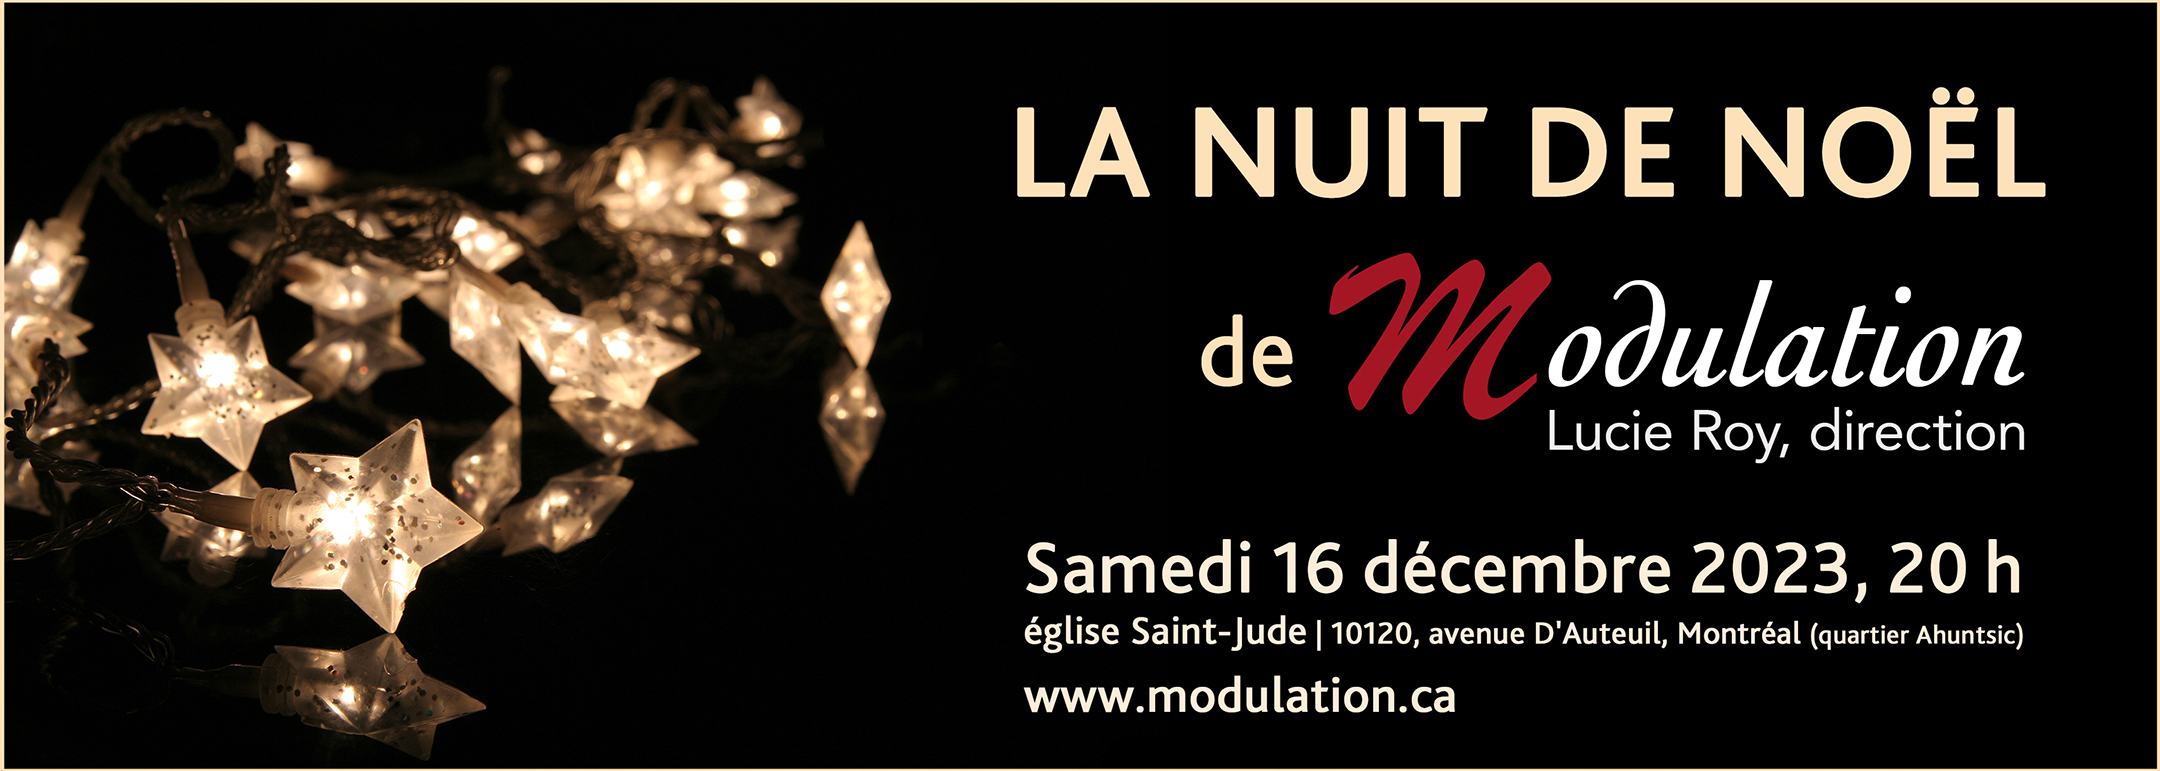 MODULATION - concert de Noël - La nuit de Noël, direction : Lucie Roy - Montréal, 16 décembre 2023